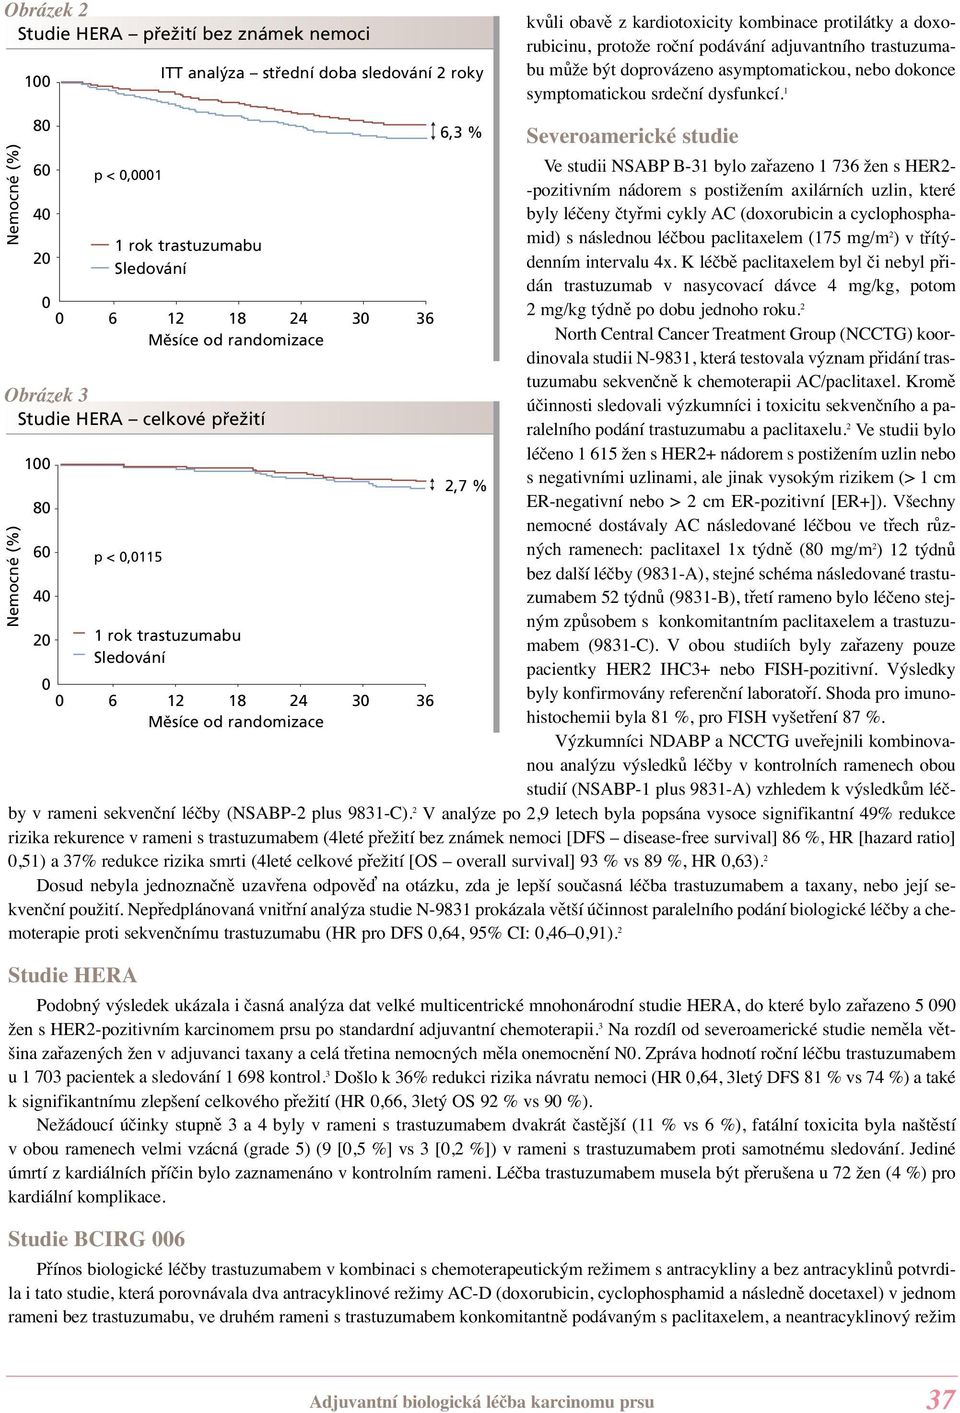 1 80 6,3 % Severoamerické studie 60 Ve studii NSABP B-31 bylo zařazeno 1 736 žen s HER2- p < 0,0001 -pozitivním nádorem s postižením axilárních uzlin, které 40 byly léčeny čtyřmi cykly AC